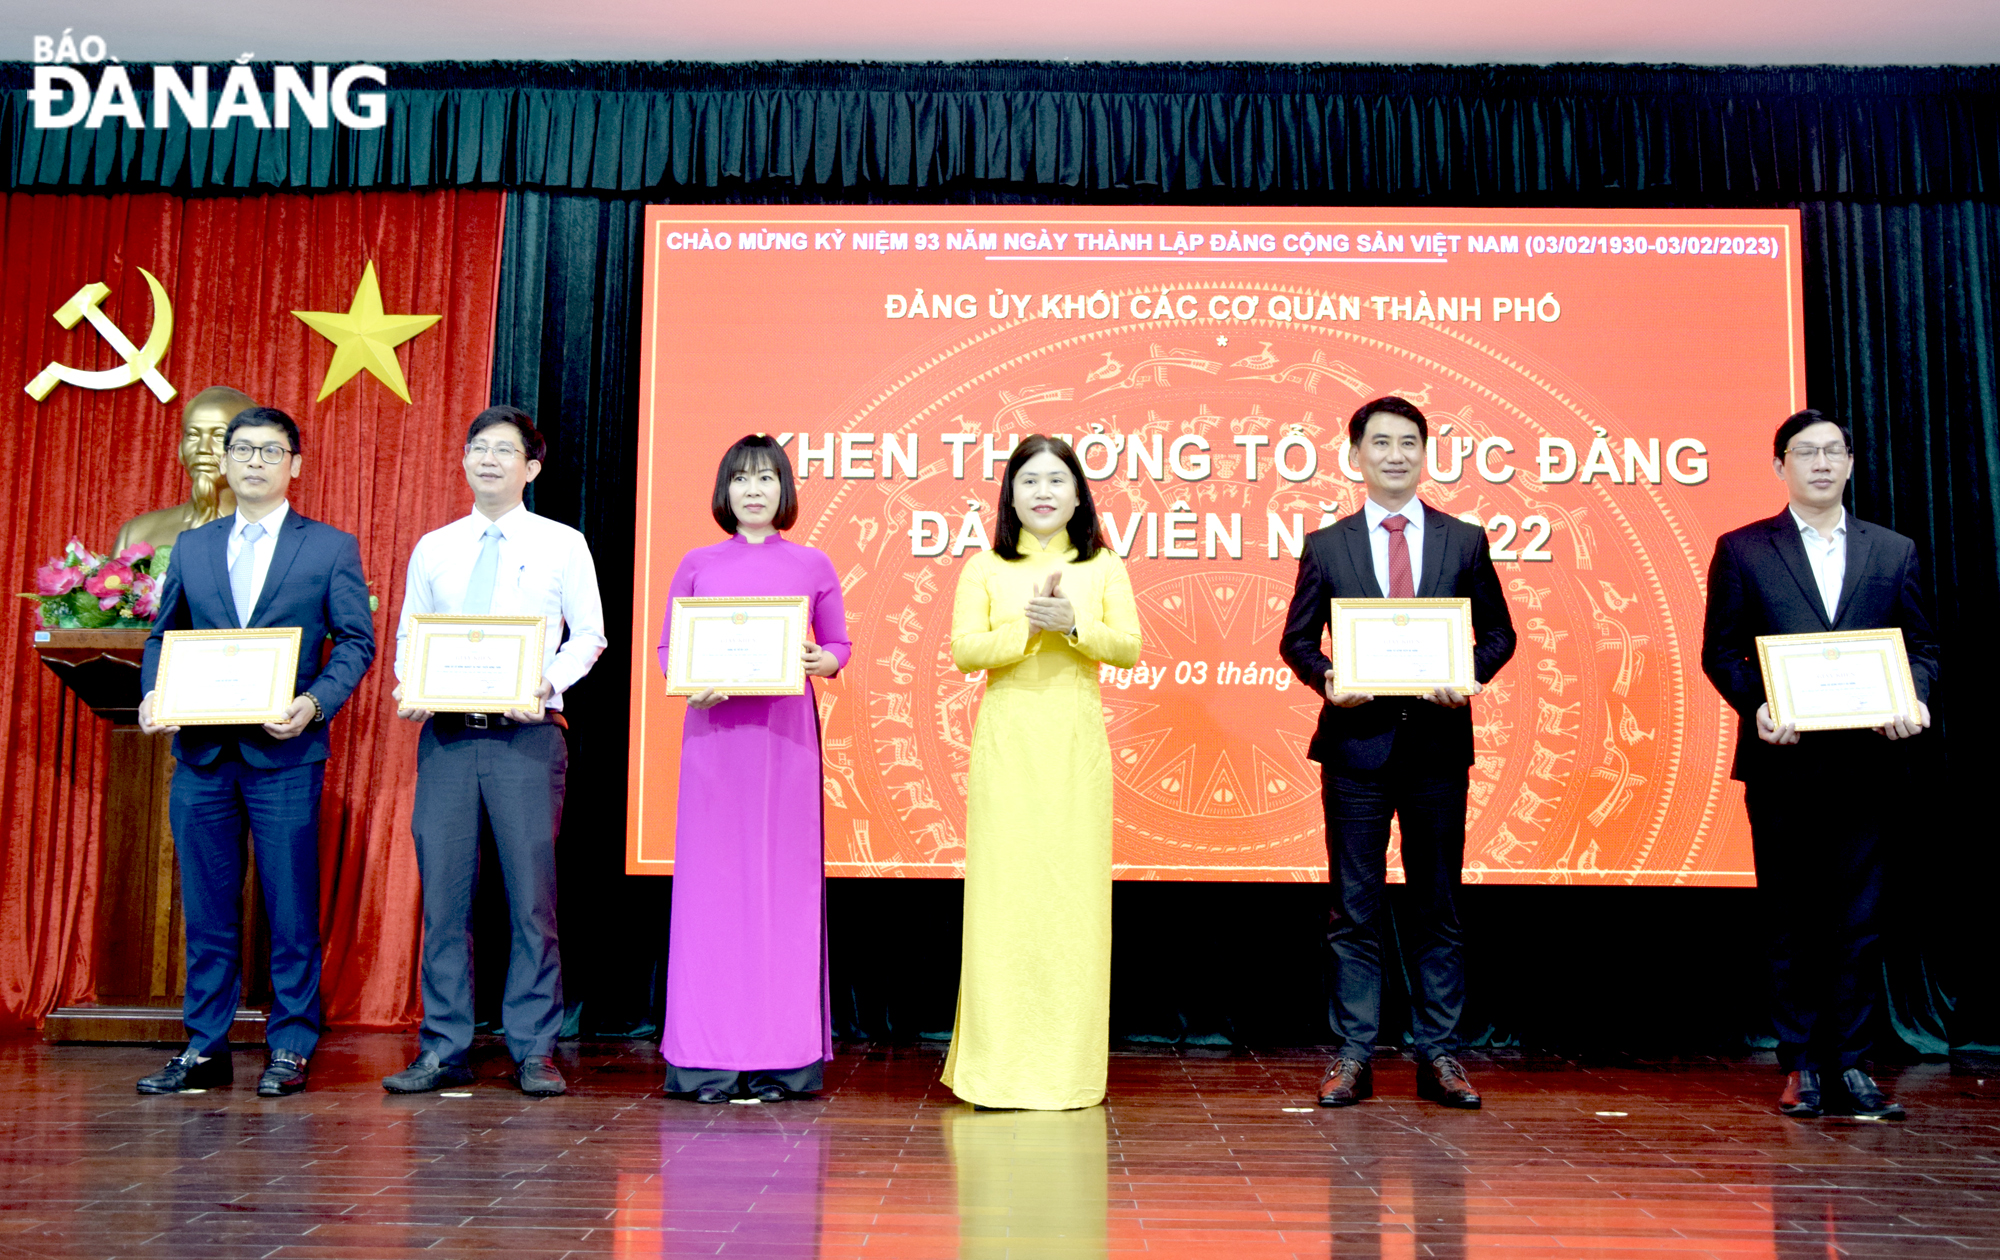 Phó Bí thư Thường trực Đảng ủy Khối các cơ quan thành phố Nguyễn Thị Kim Hoa (thứ 3, phải sang) trao thưởng cho các tổ chức đảng có thành tích xuất sắc trong công tác phát triển đảng viên năm 2022. Ảnh: T. HUY